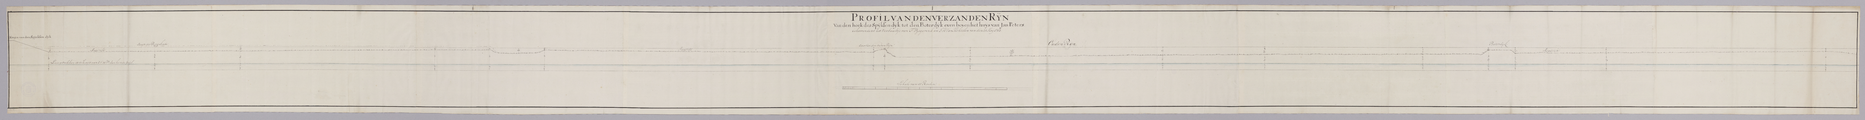 219-0001 Profil van den verzanden Rijn van den hoek des Spijksen dijks tot den Boterdijk..., [mei 1763]